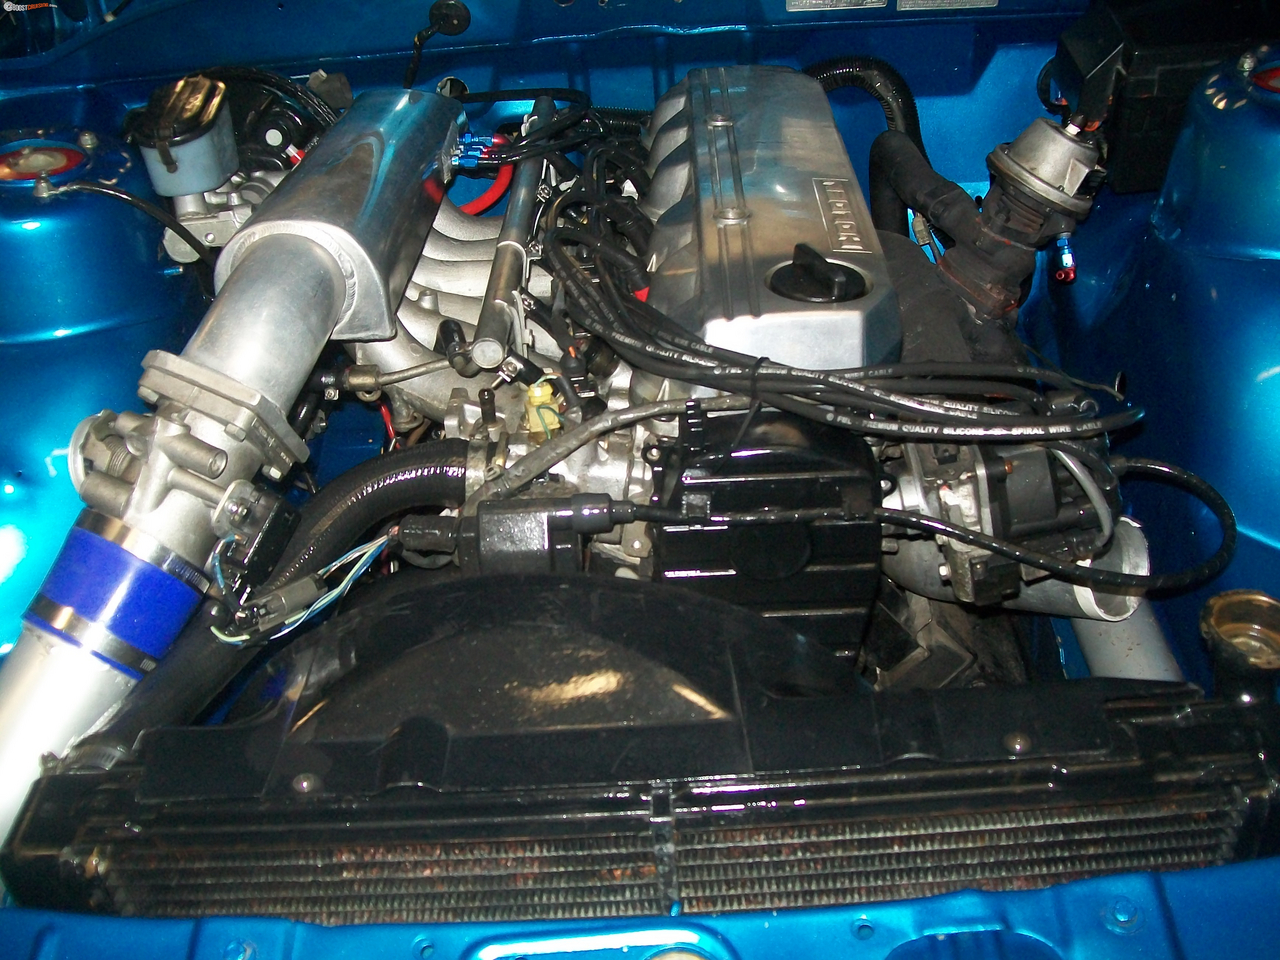 1988 Holden Commodore Vl Turbo